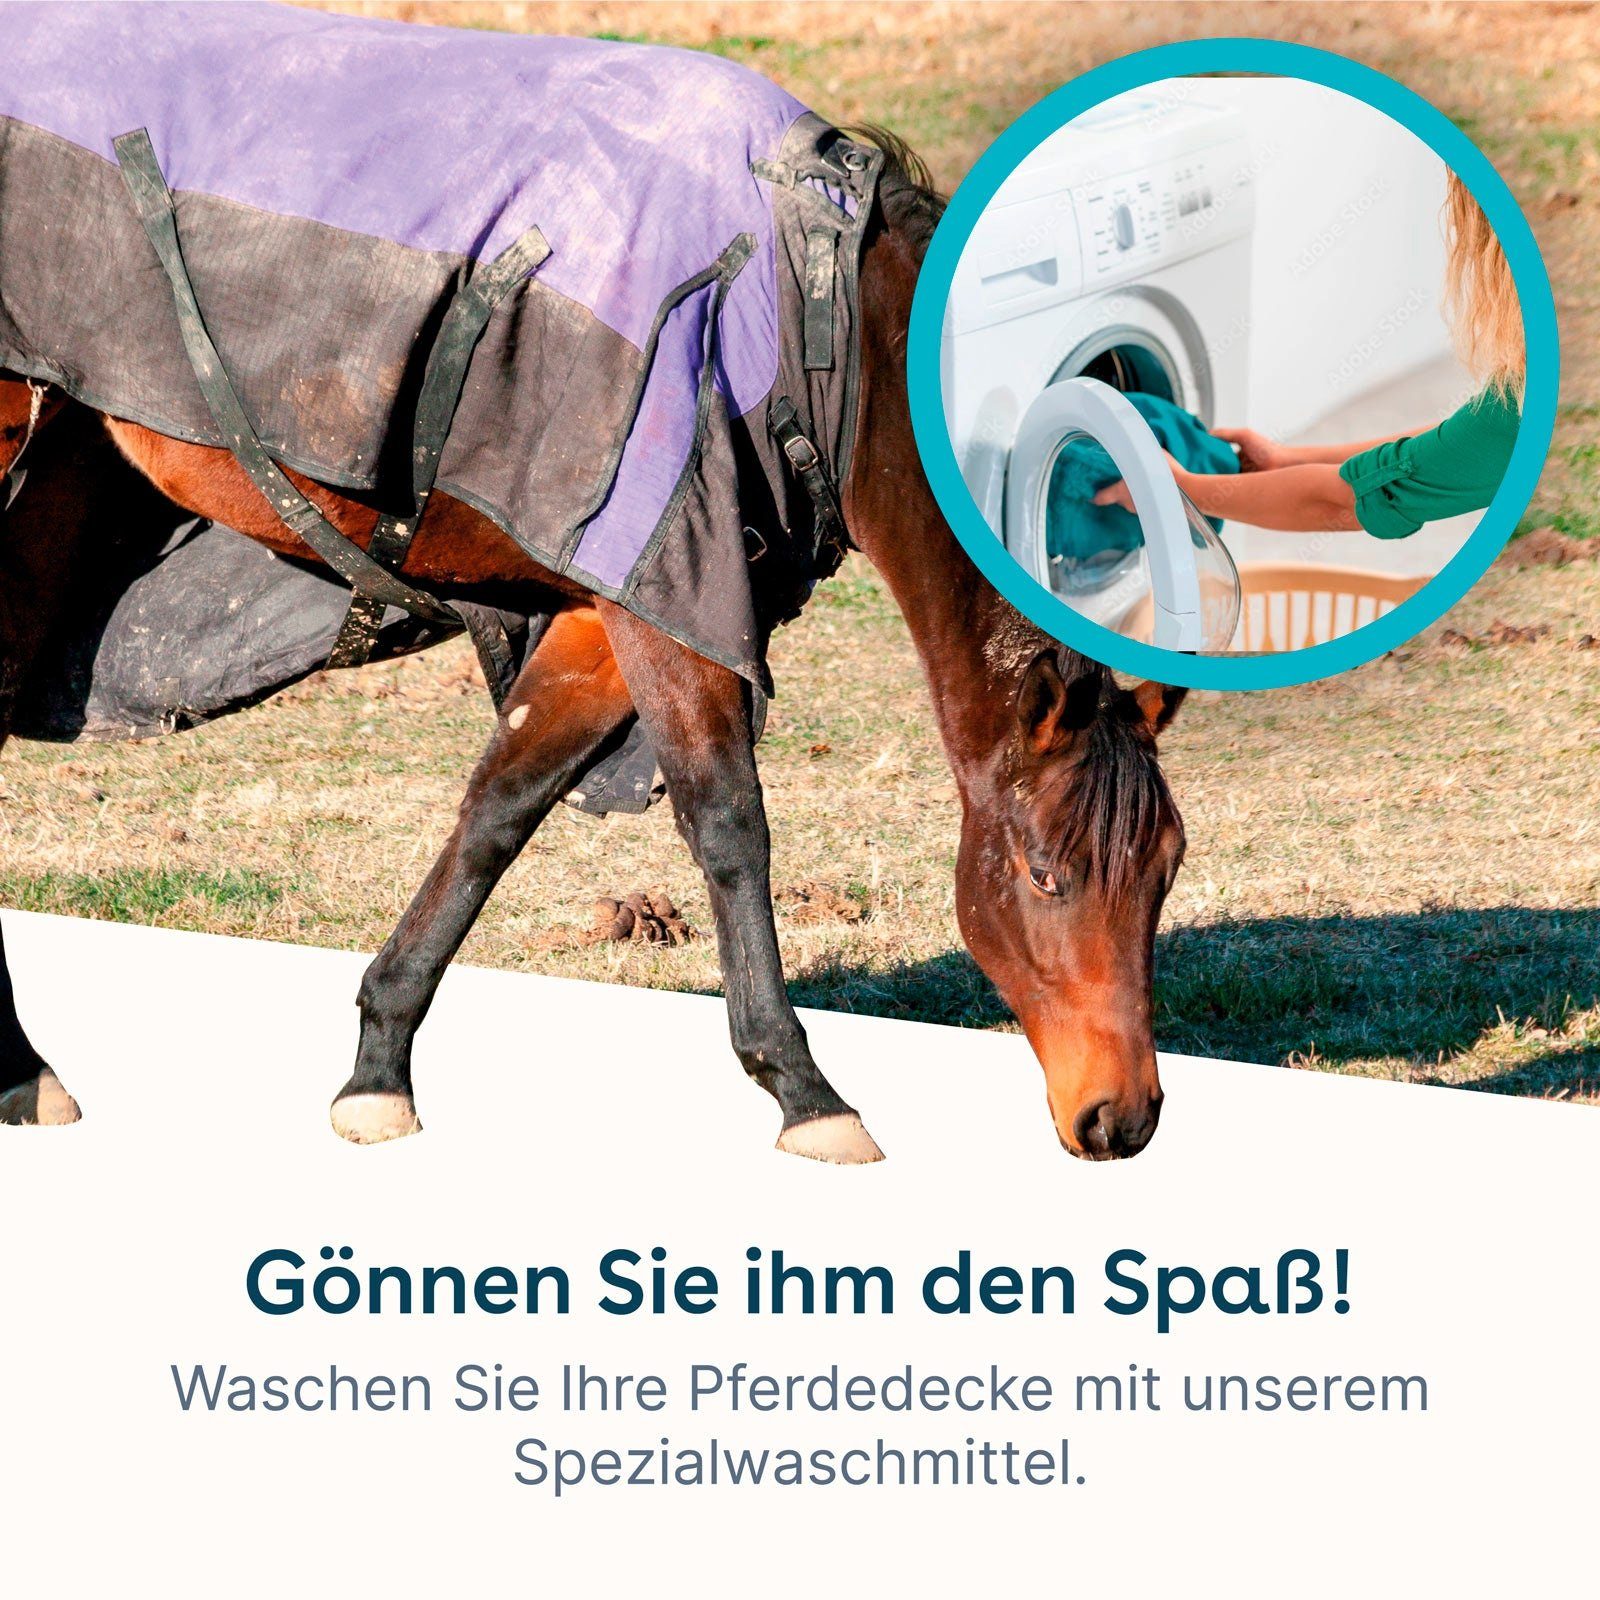 eco:fy wasseranziehenden Pferdedecken-Waschmittel Spezialwaschmittel (Entfernt schonend Dreck) den